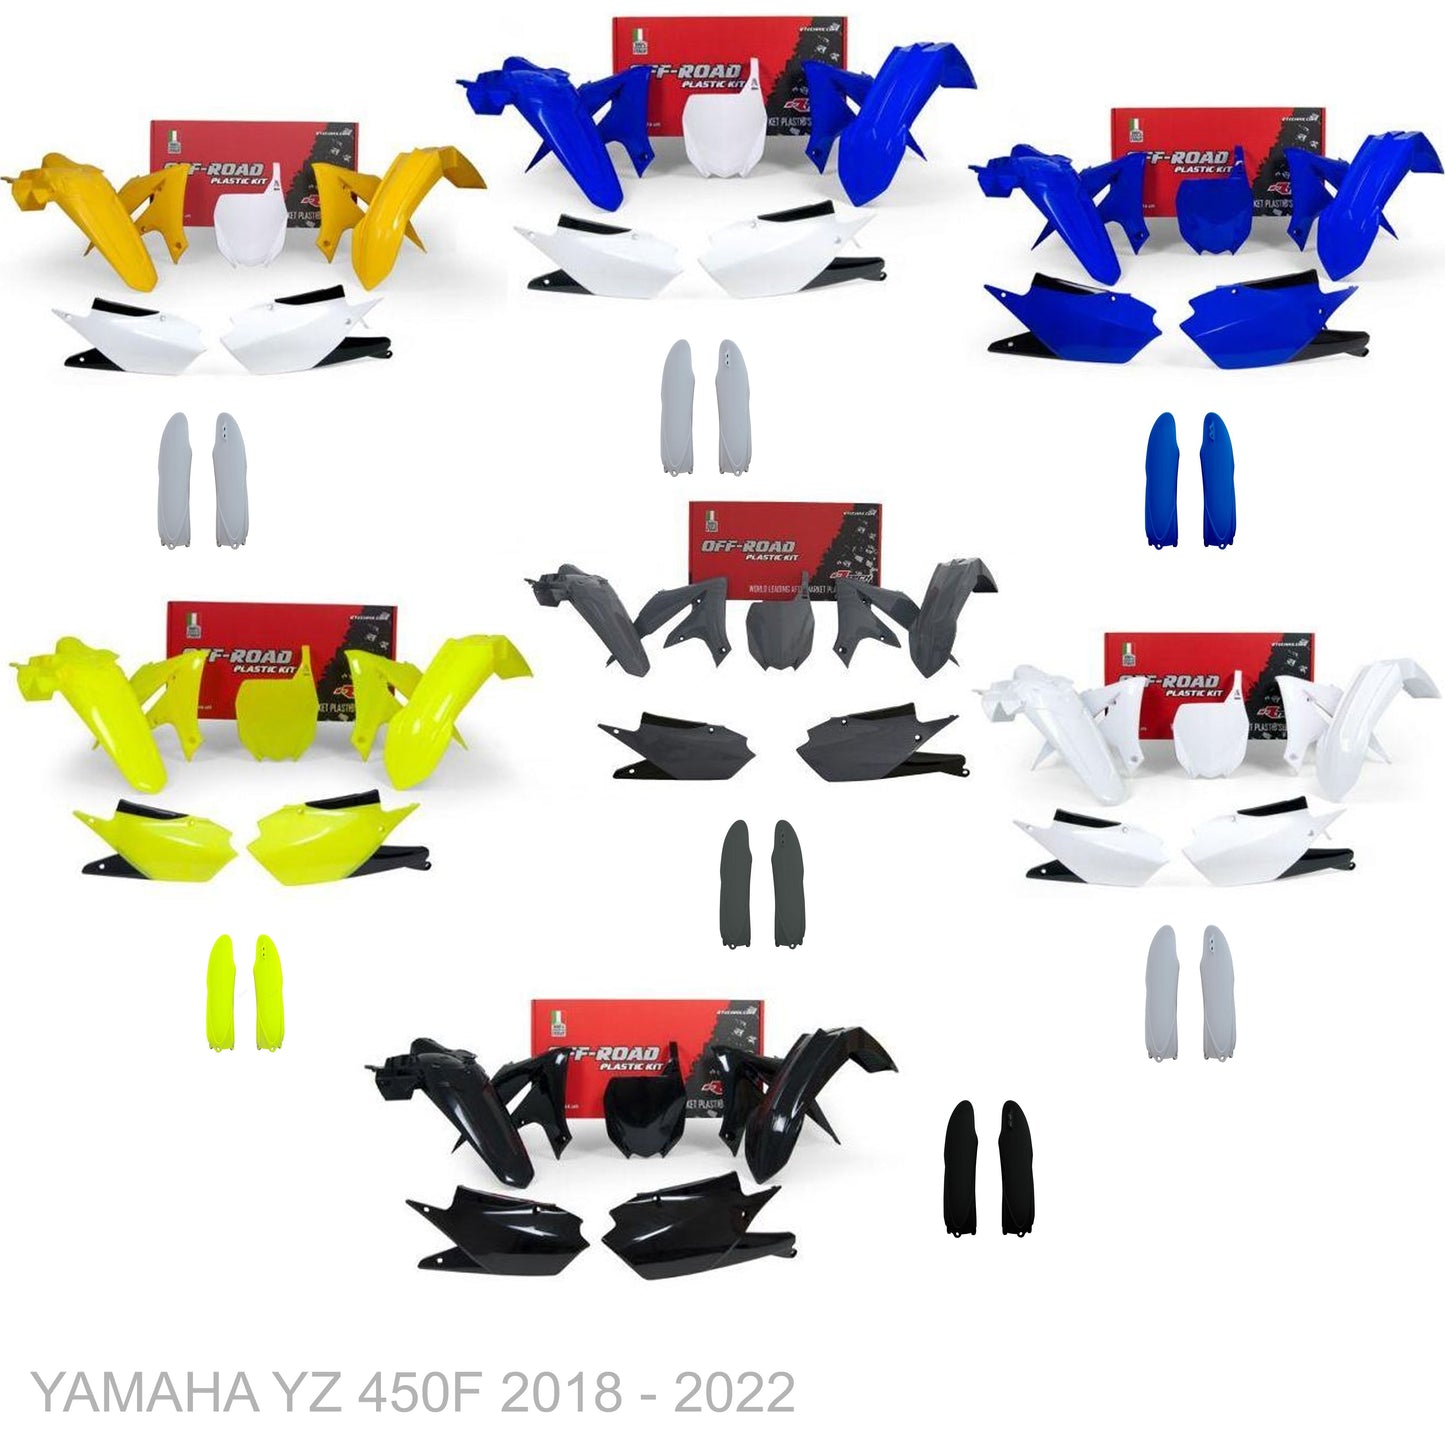 YAMAHA YZ 450F 2018 - 2022 VICE Graphics kit